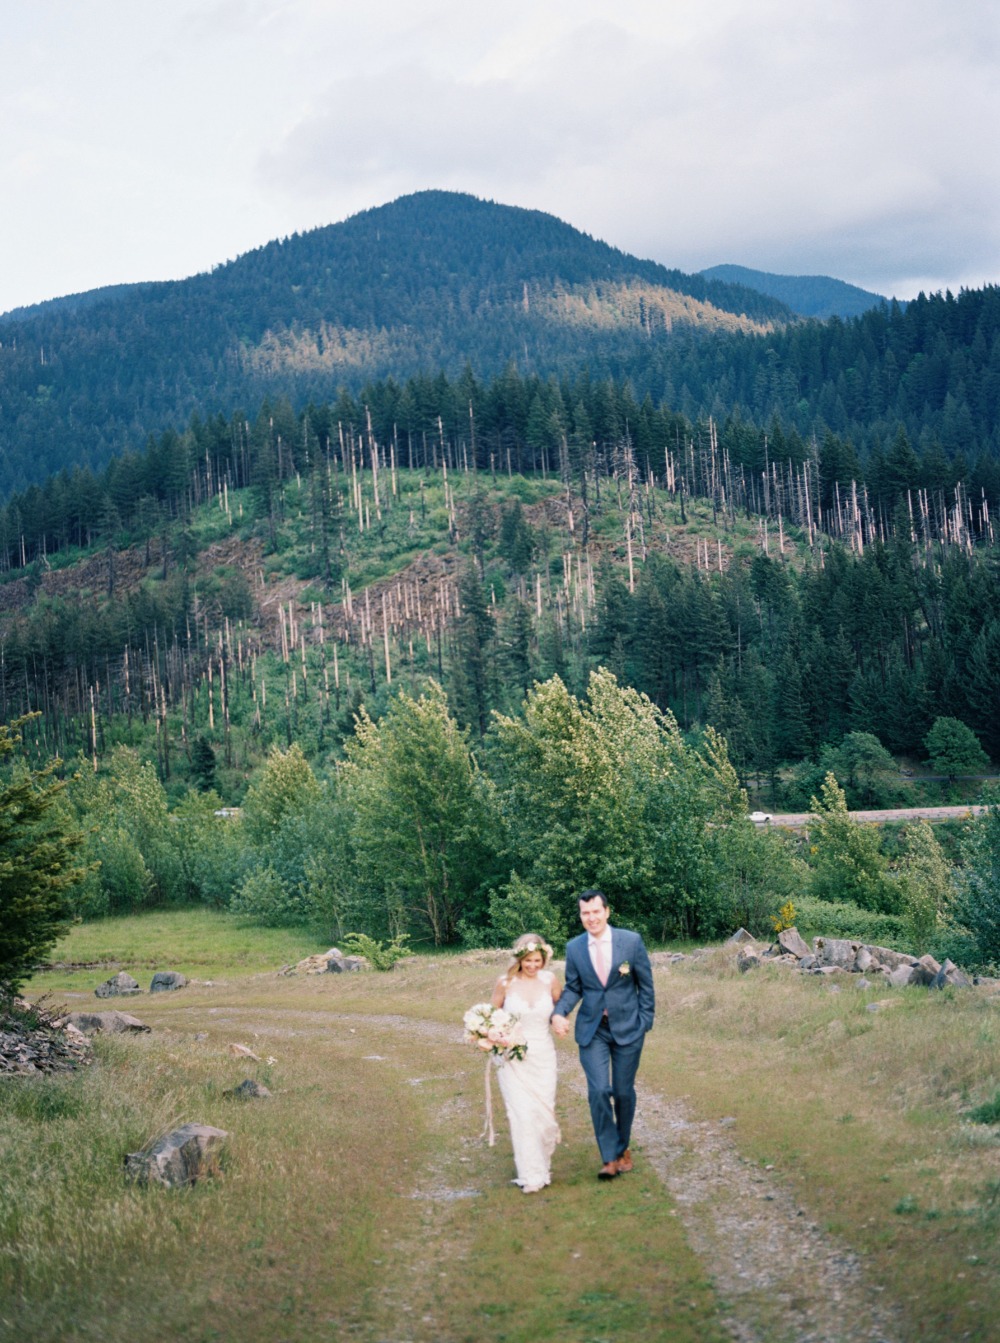 Outdoor elopement idea in Oregon